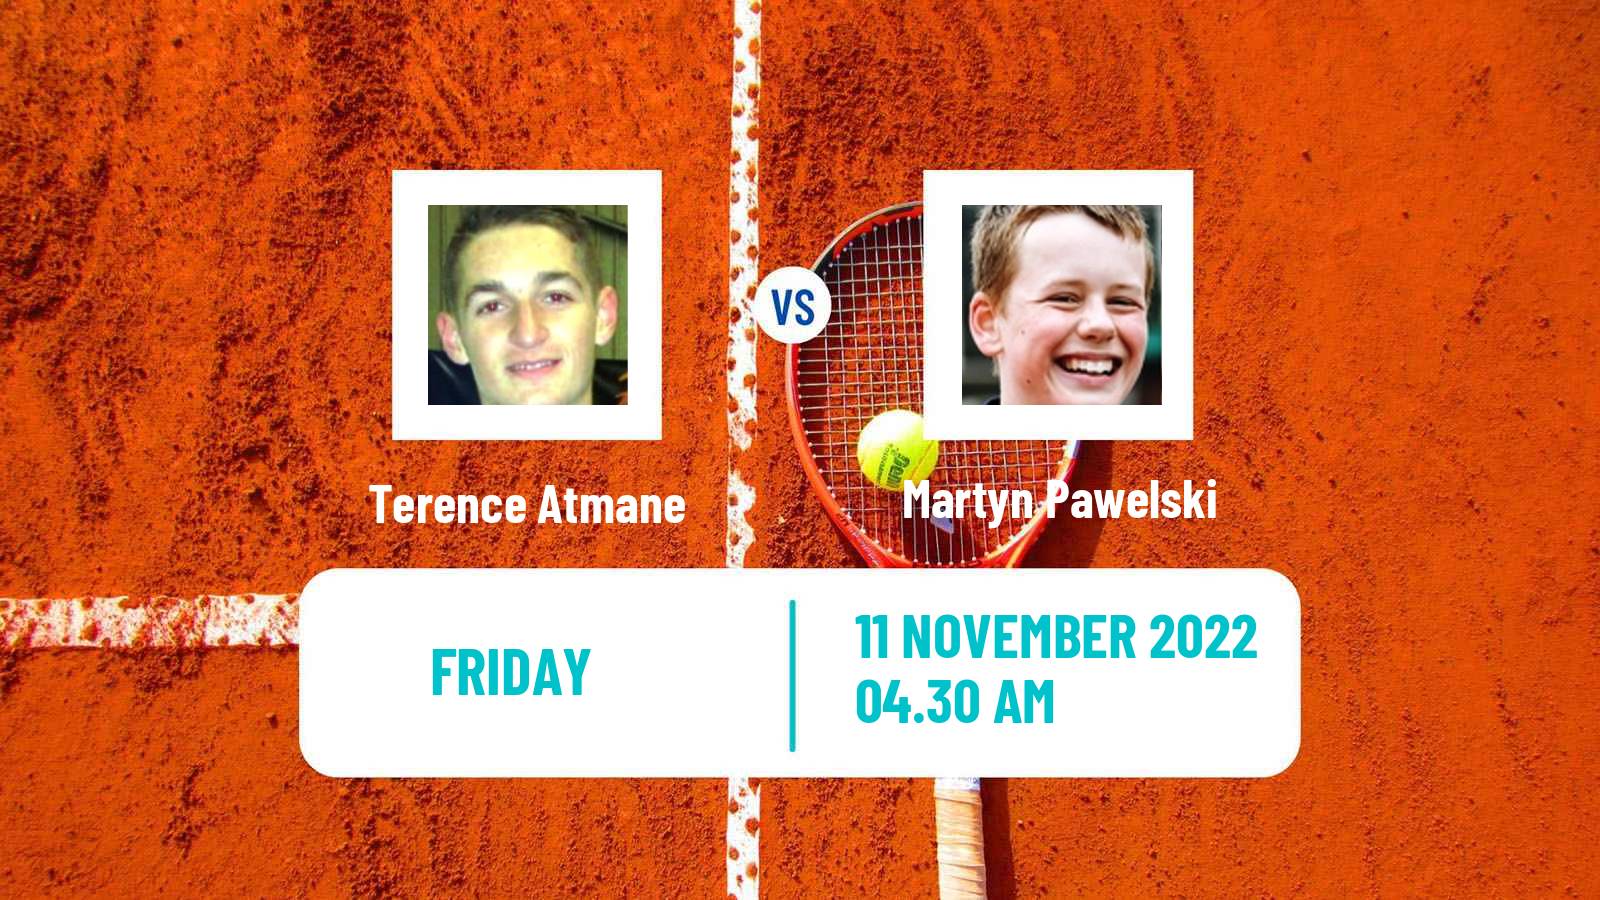 Tennis ITF Tournaments Terence Atmane - Martyn Pawelski